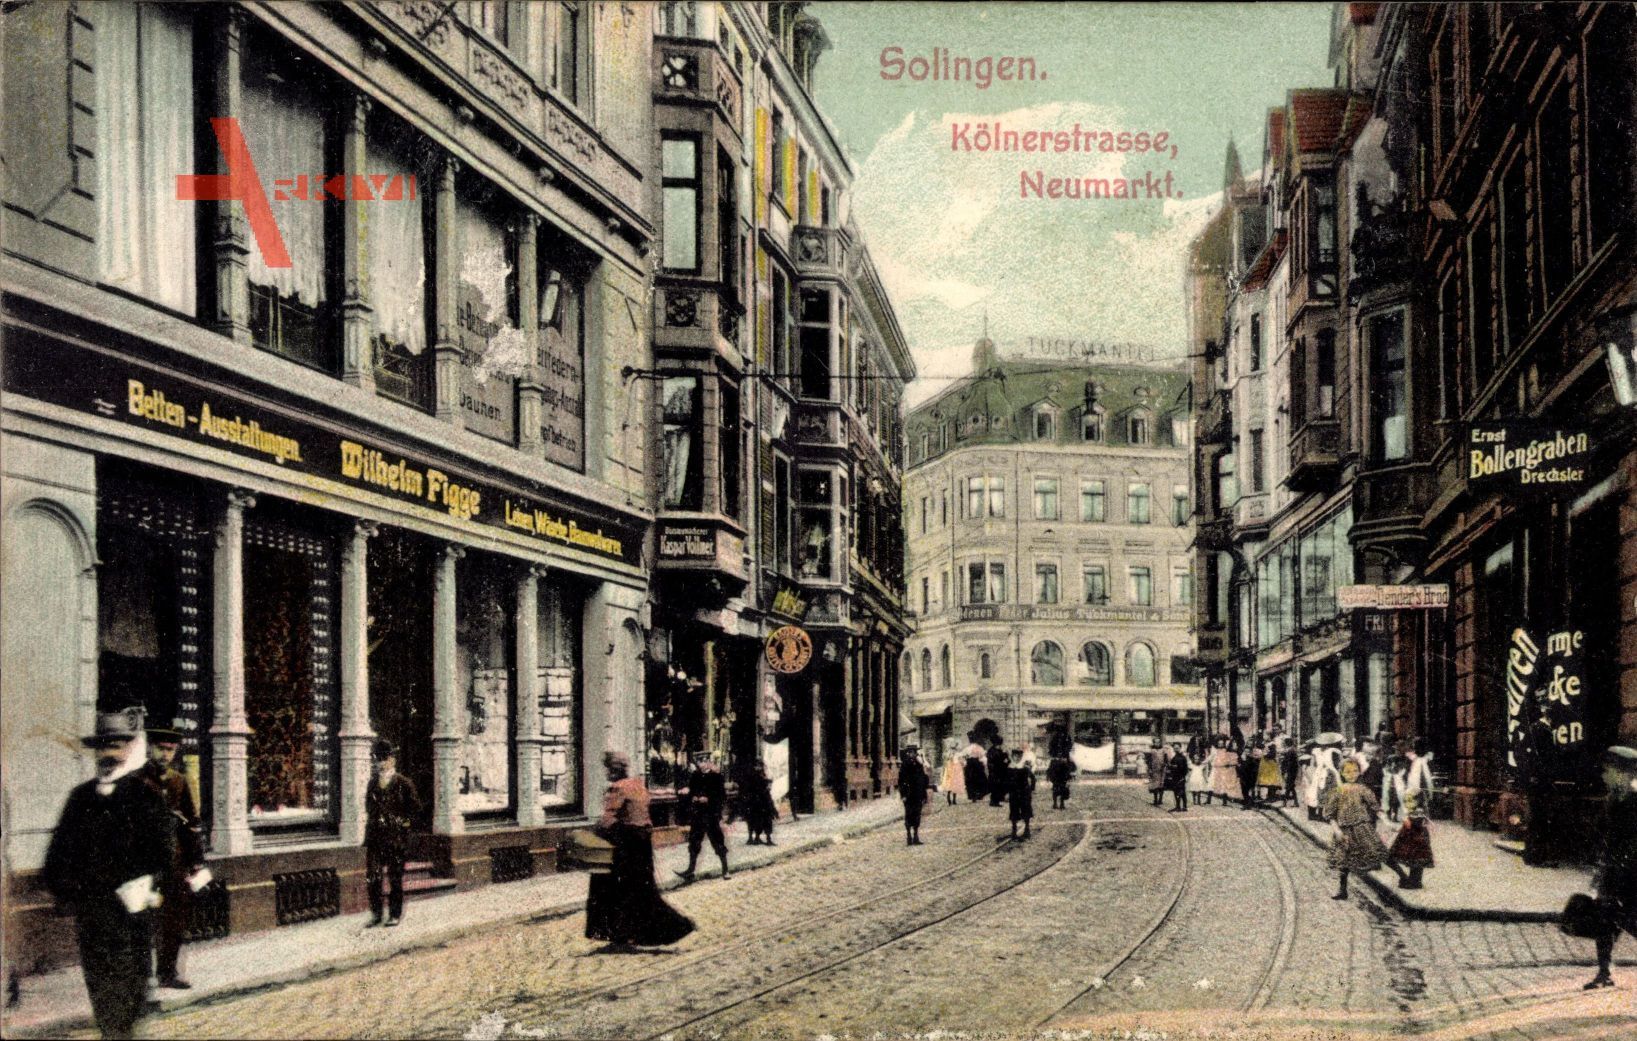 Solingen in Nordrhein Westfalen, Kölnerstraße Neumarkt, Wilhelm Figge